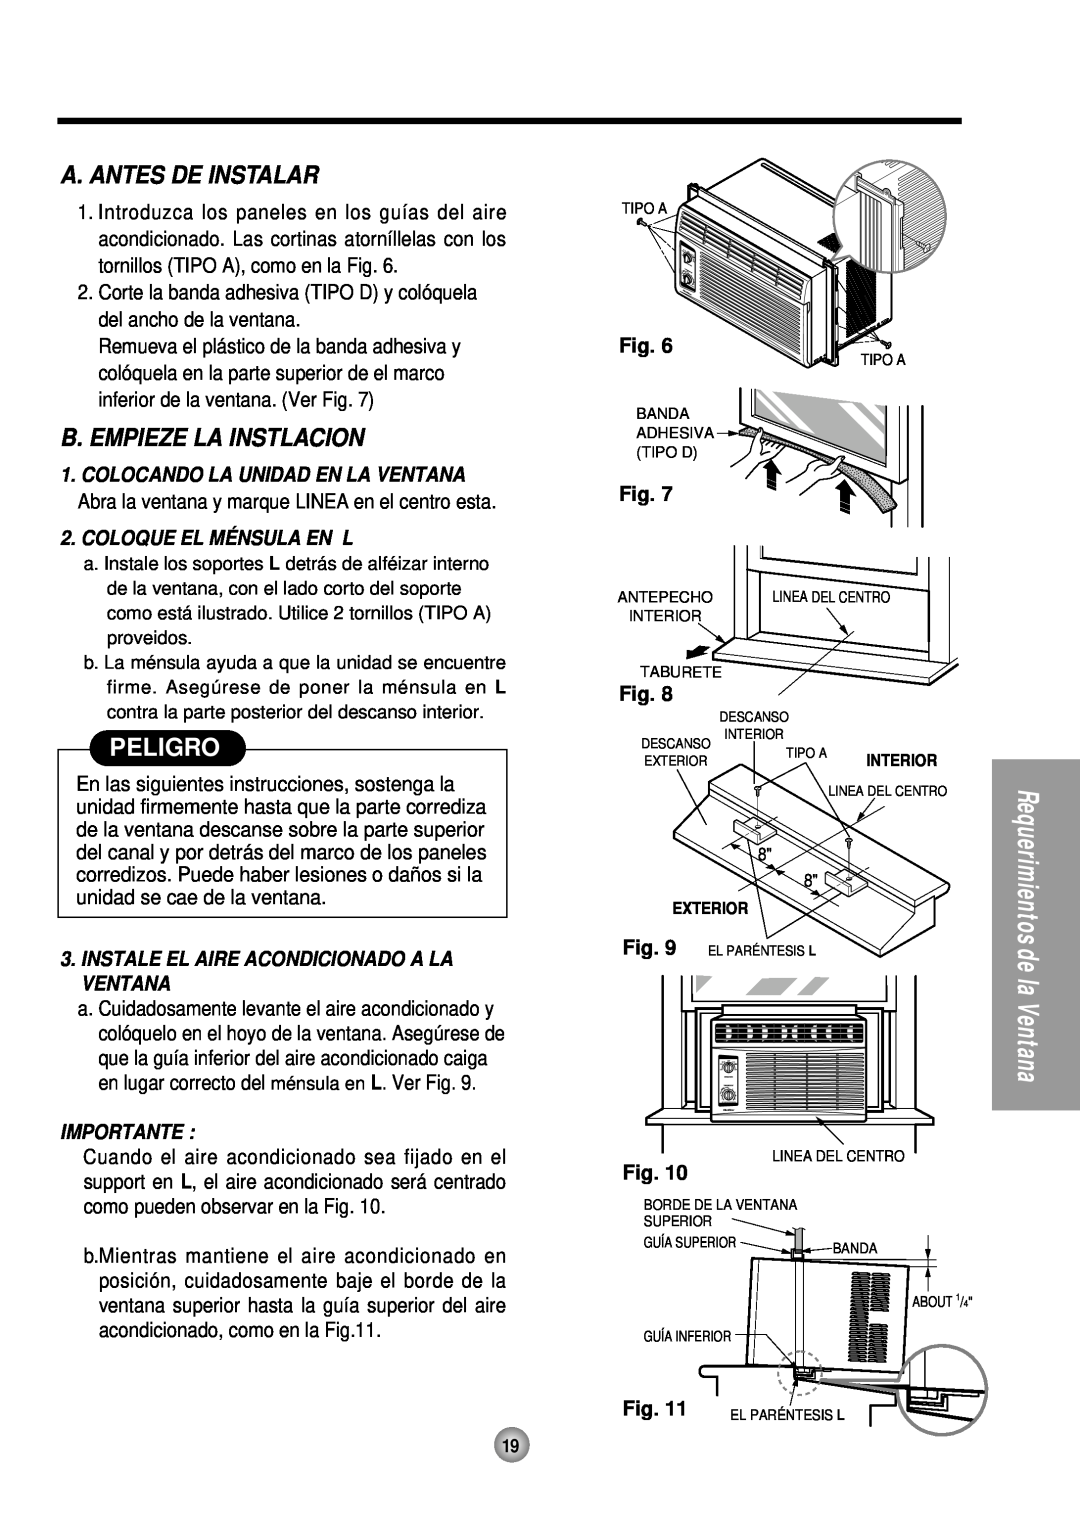 Panasonic HQ-2051TH manual A. Antes De Instalar, B.Empieze La Instlacion, Peligro, Coloque El Ménsula En L, Importante 